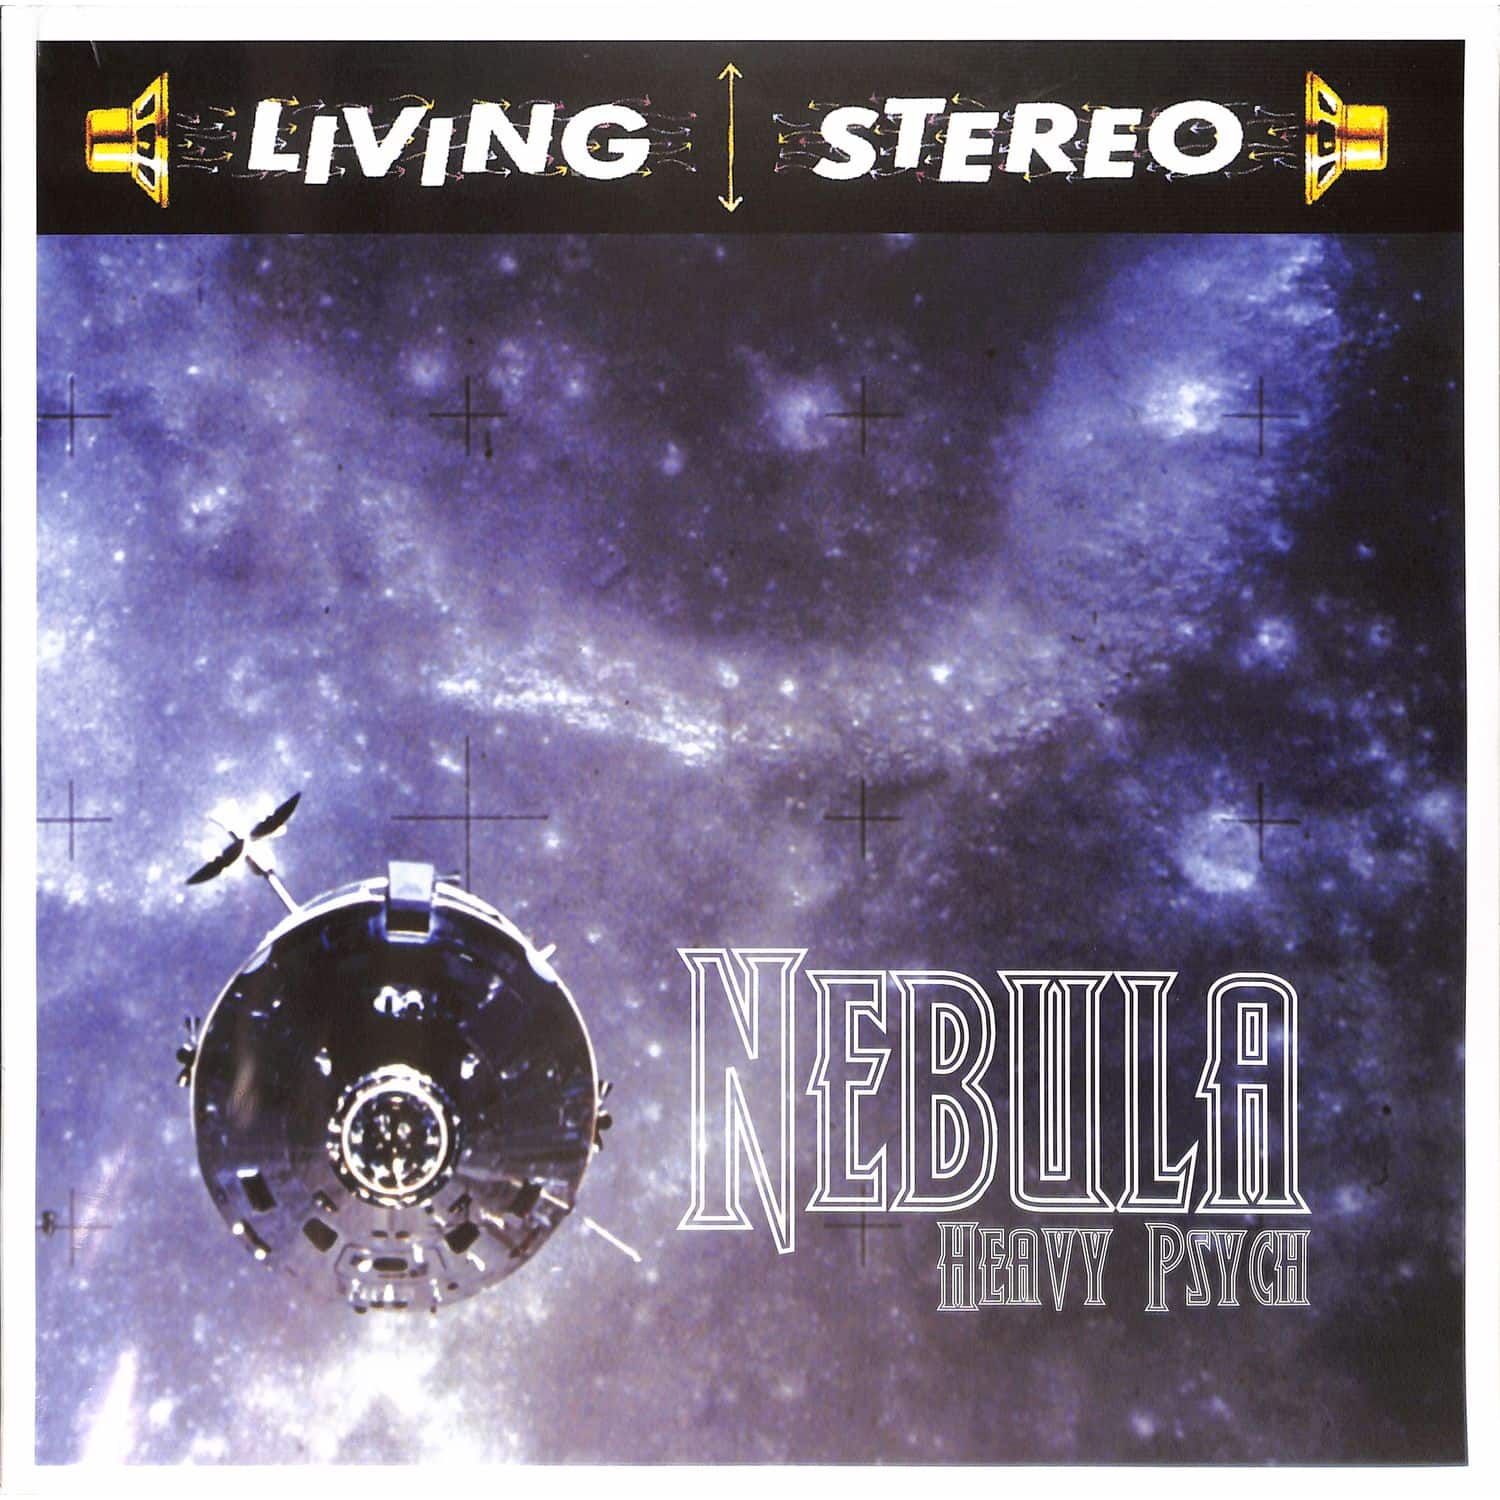 Nebula - HEAVY PSYCH 